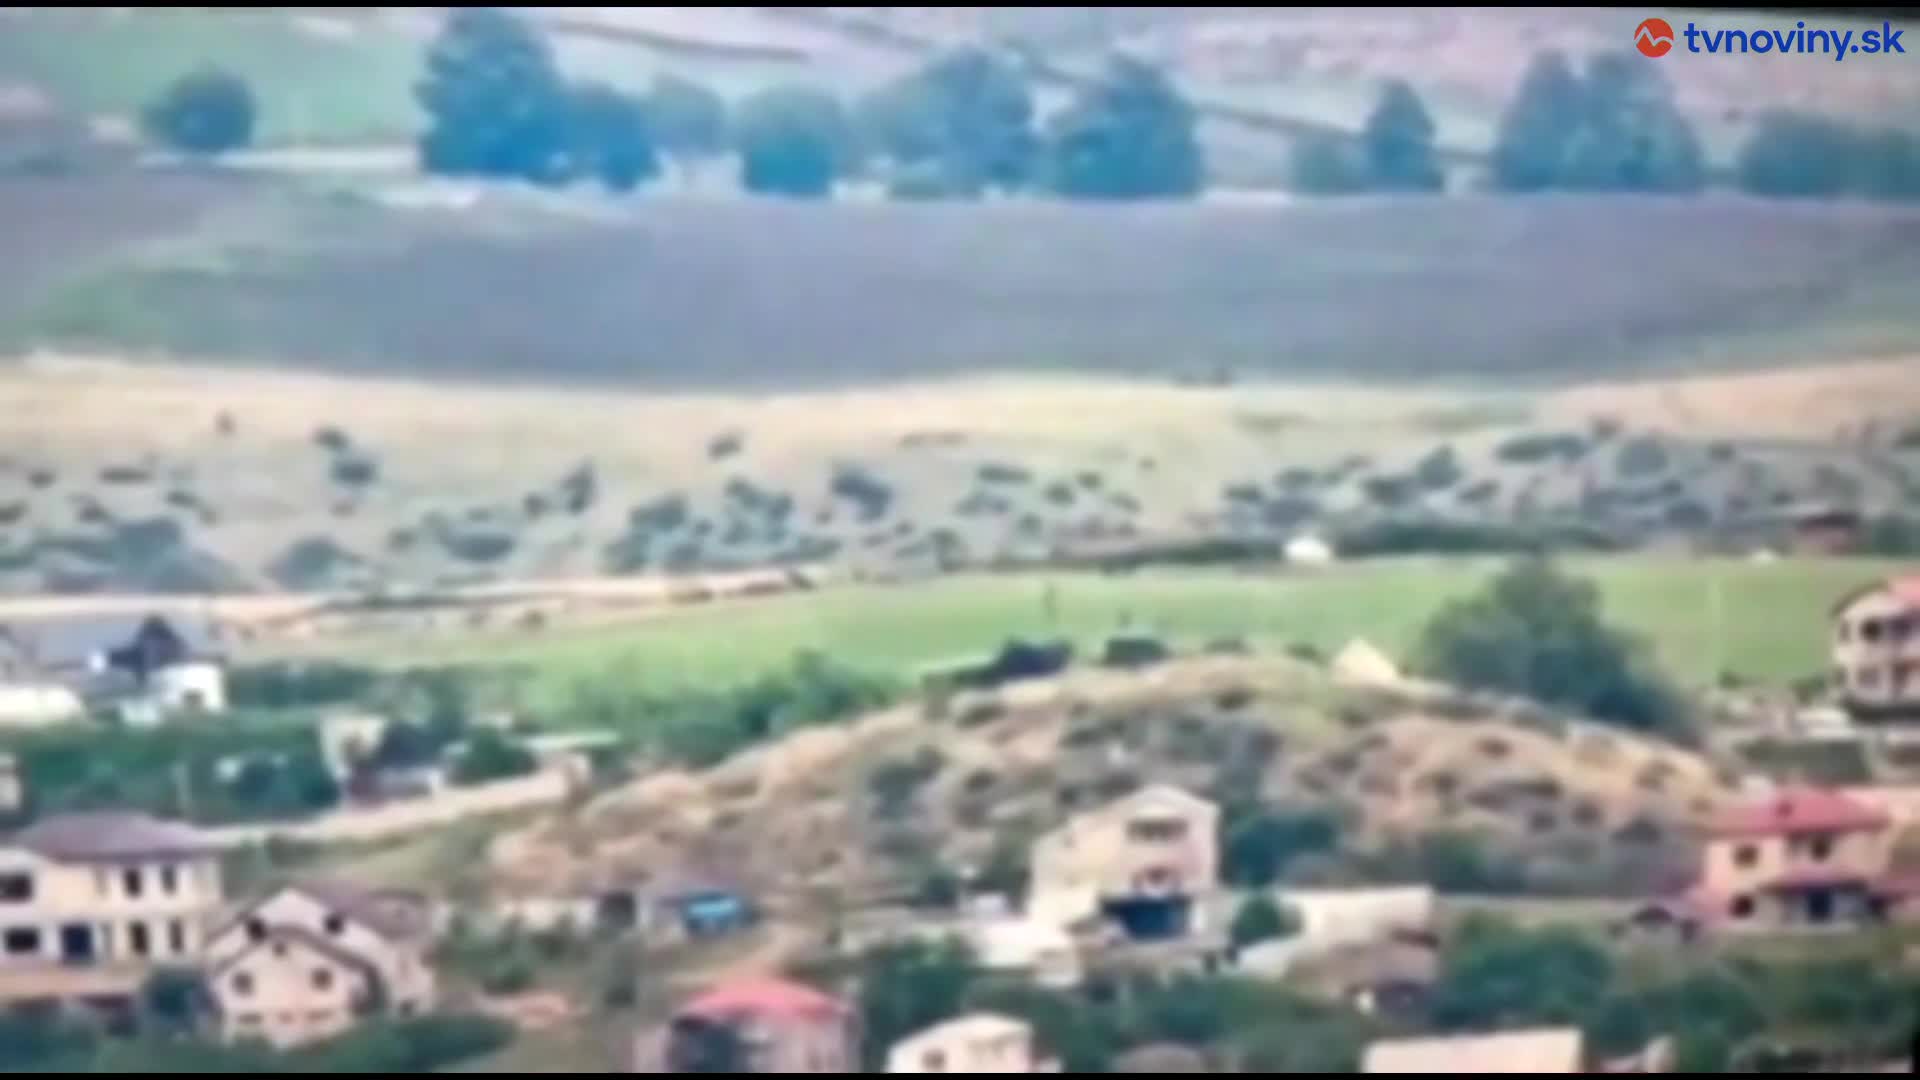 Míny v Náhornom Karabachu usmrtili šesť ľudí. Azerbajdžan obvinil arménskych sabotérov